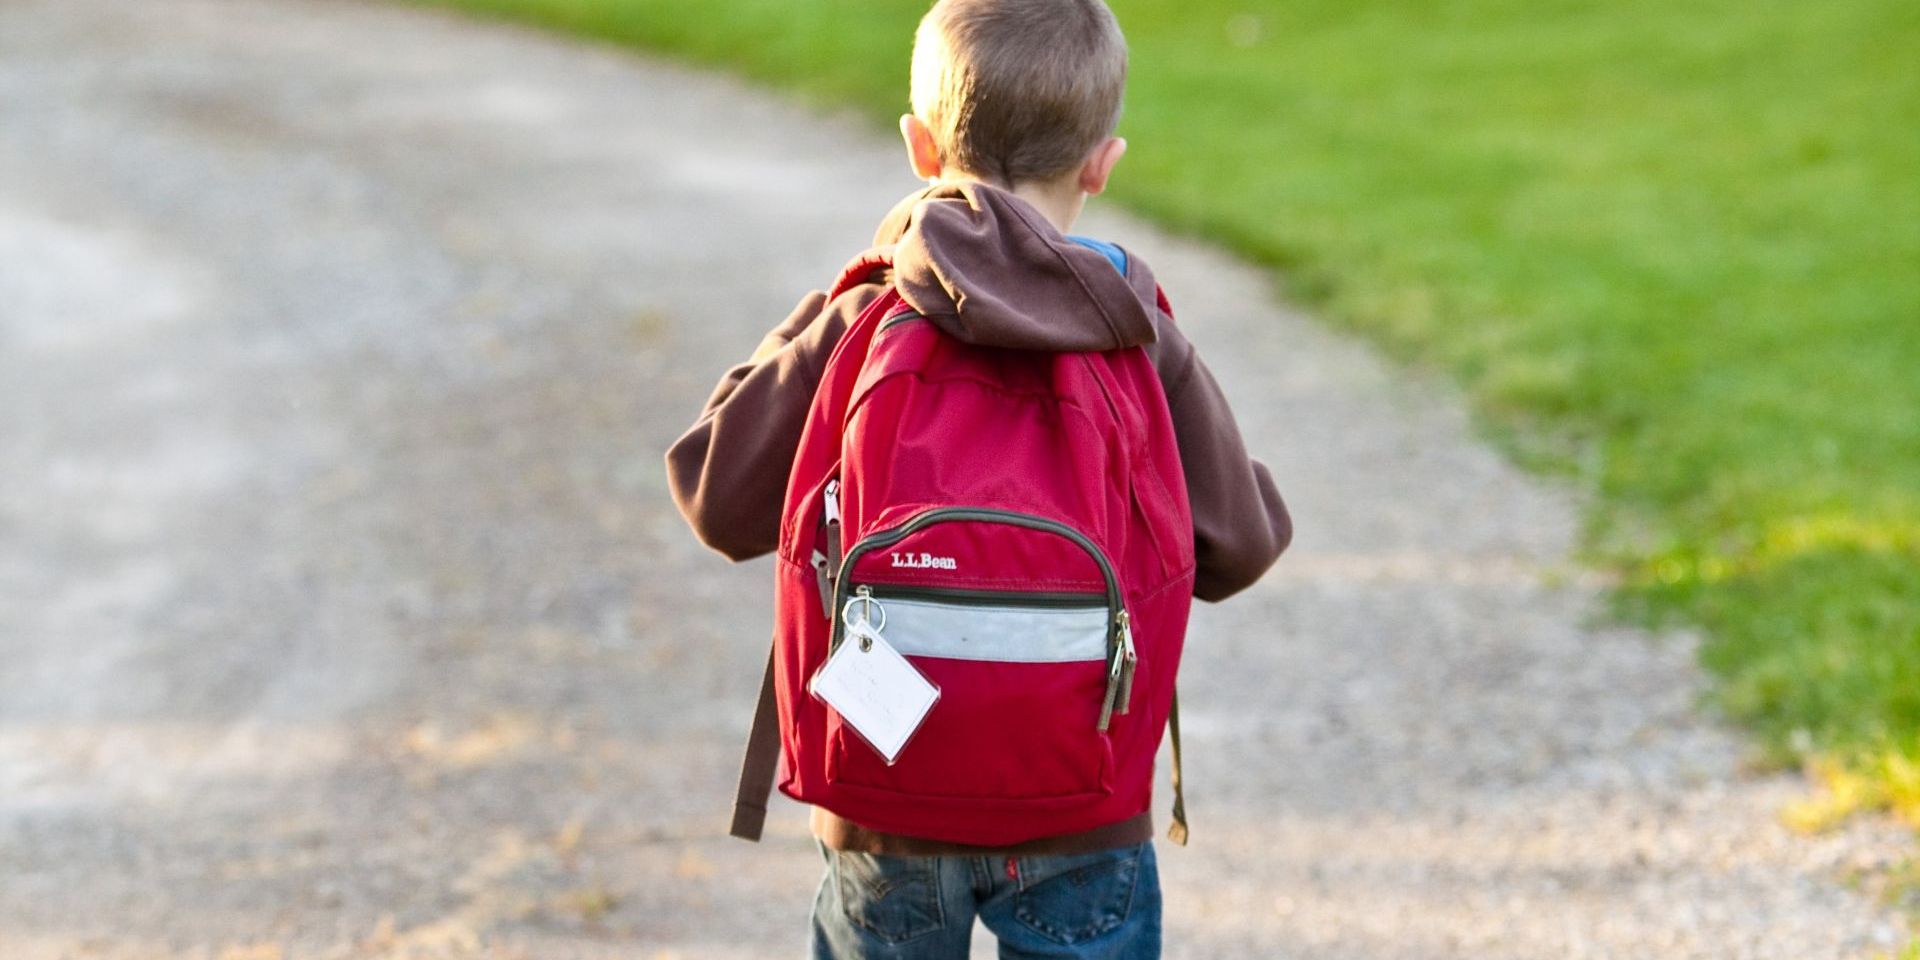 Védi a gyermeket az elhízástól az, ha gyalog jár az iskolába